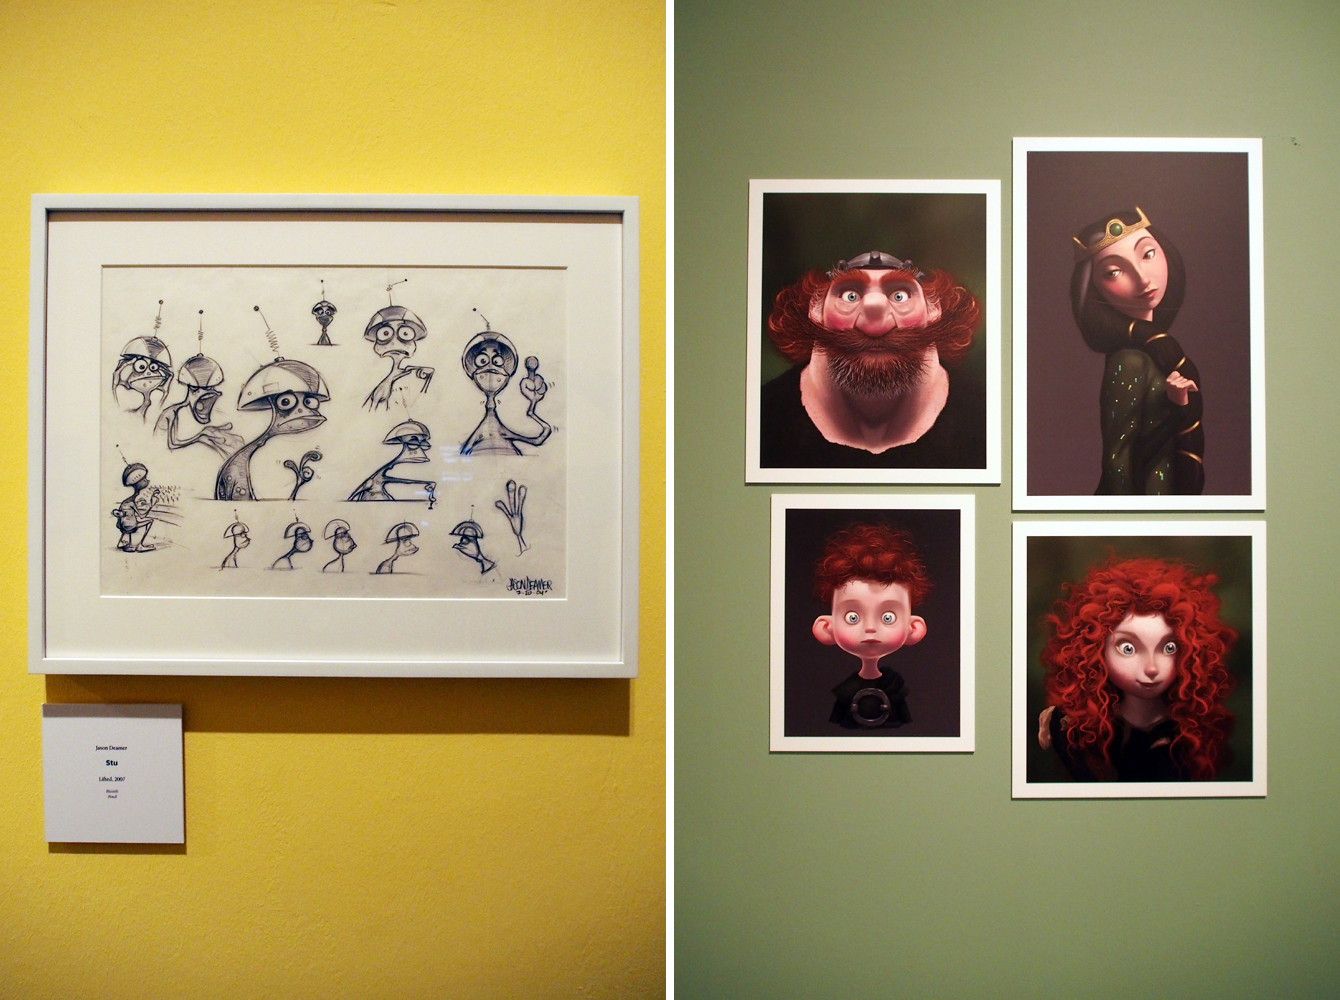 Ausstellung "Pixar - 25 Years of Animation" - Blick in die Ausstellung - Rechte für die abgebildeten Figuren und Kunstwerke liegen bei Pixar, Bildrechte bei "Fee ist mein Name"